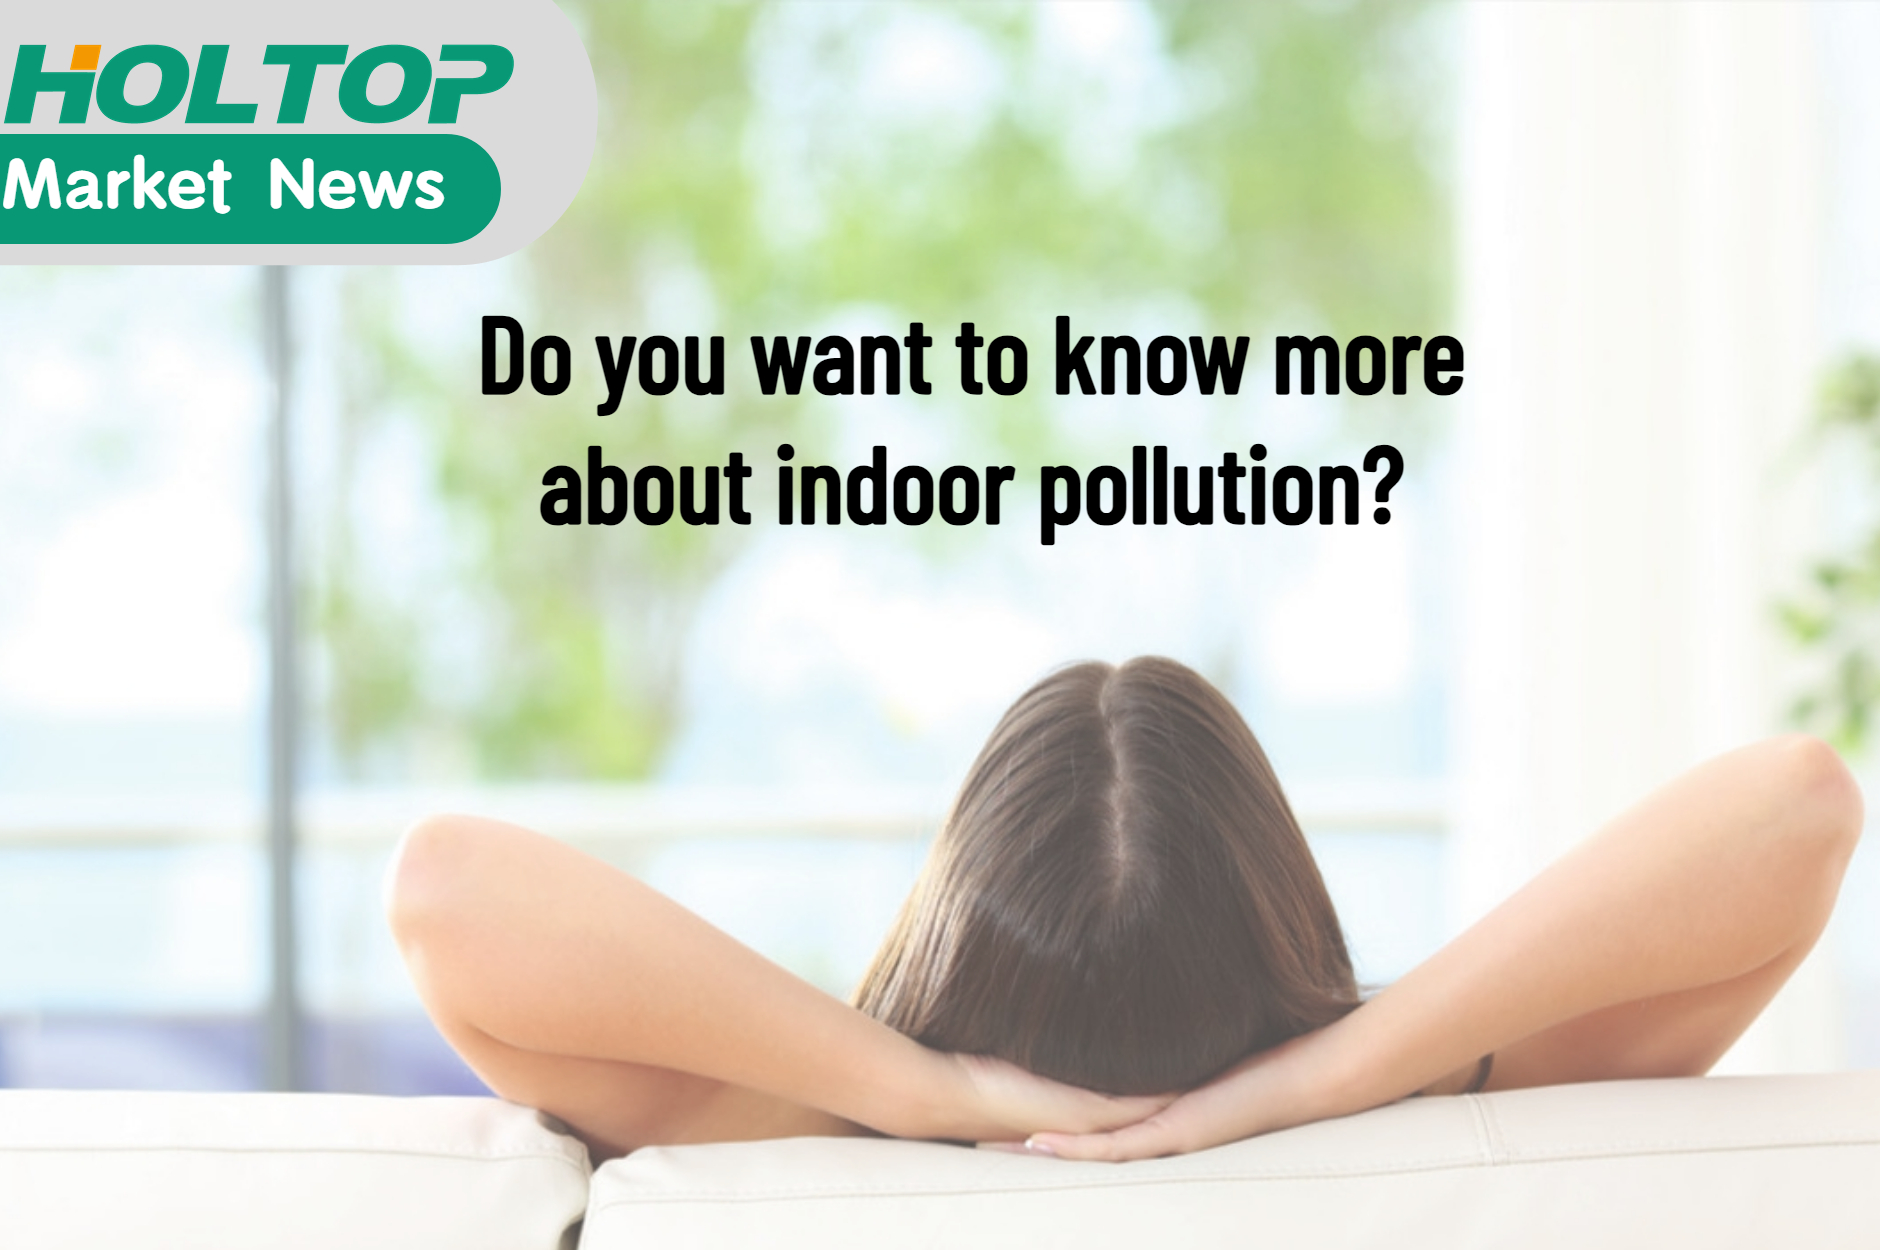 Möchten Sie mehr über die Luftverschmutzung in Innenräumen erfahren?